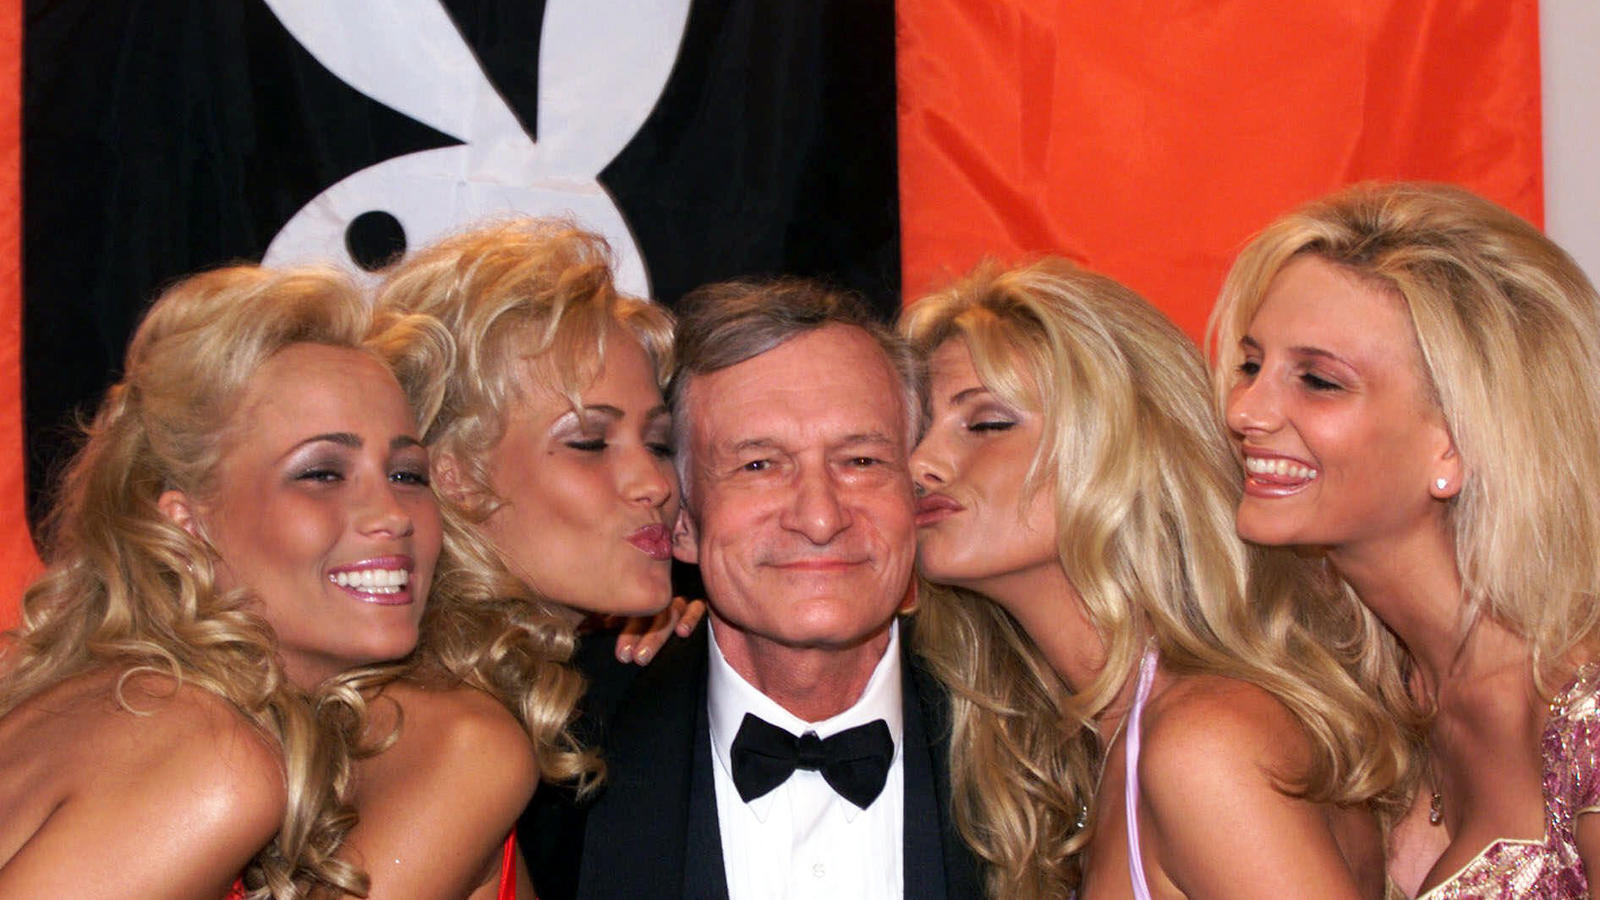 ARCHIV - «Playboy»-Gründer Hugh Hefner am 14.05.1999 in Cannes, Frankreich, wird während der 52. Internationalen Filmfestspiele von Cannes von Playmates geküsst. Hefner ist im Alter von 91 Jahren gestorben. (zu dpa ««Playboy»-Gründer Hugh Hefner ist 